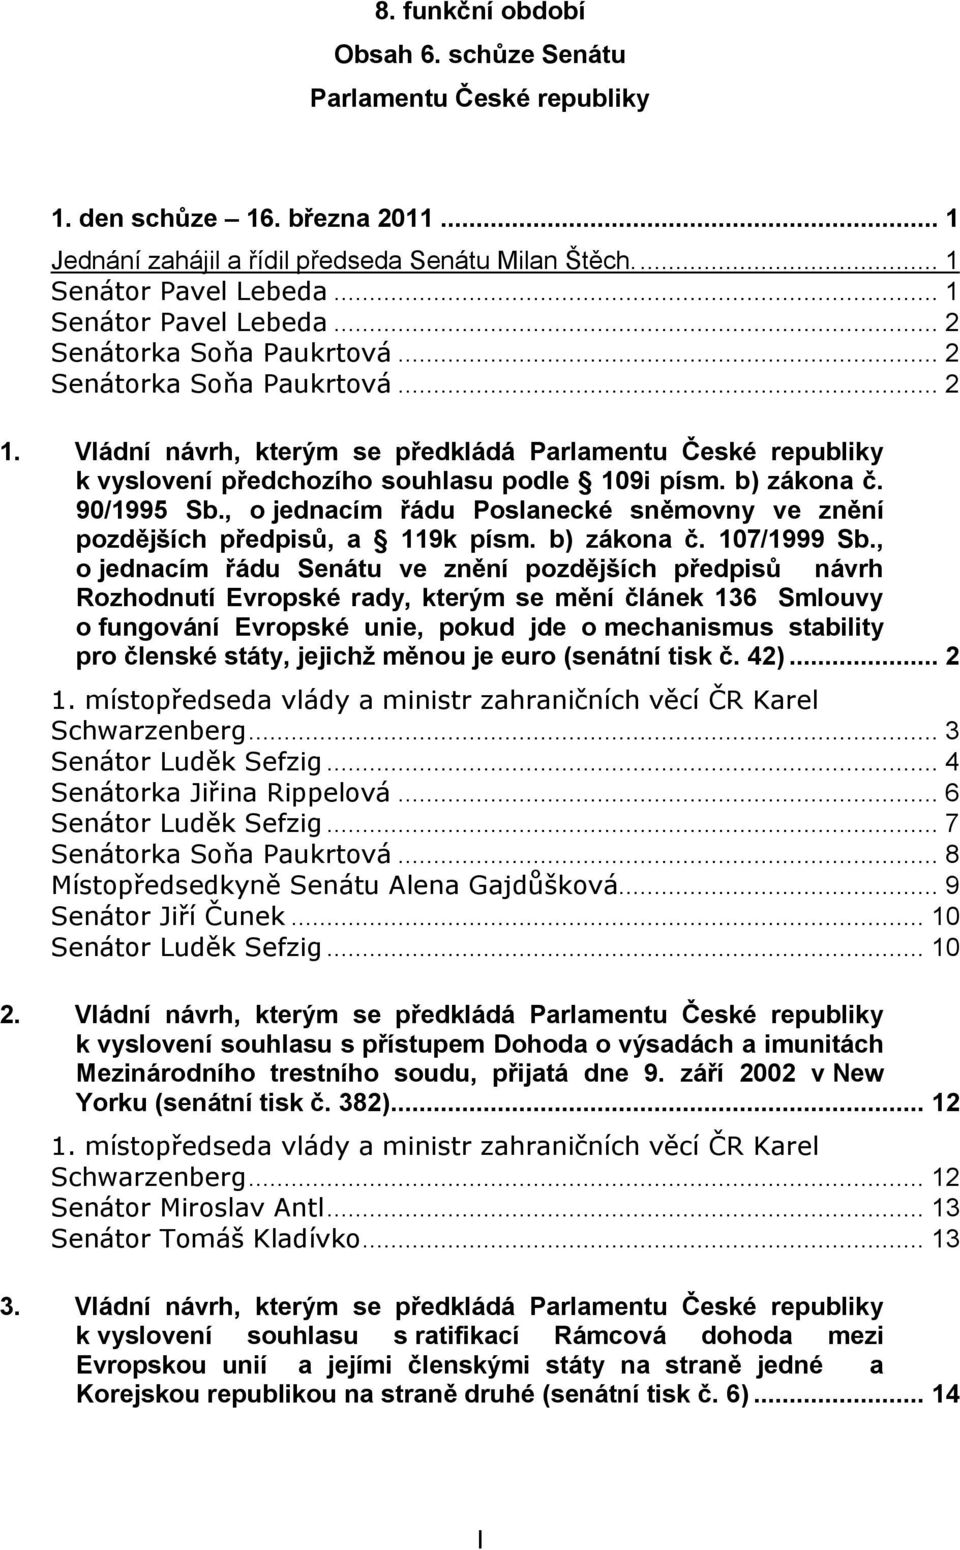 Vládní návrh, kterým se předkládá Parlamentu České republiky k vyslovení předchozího souhlasu podle 109i písm. b) zákona č. 90/1995 Sb.